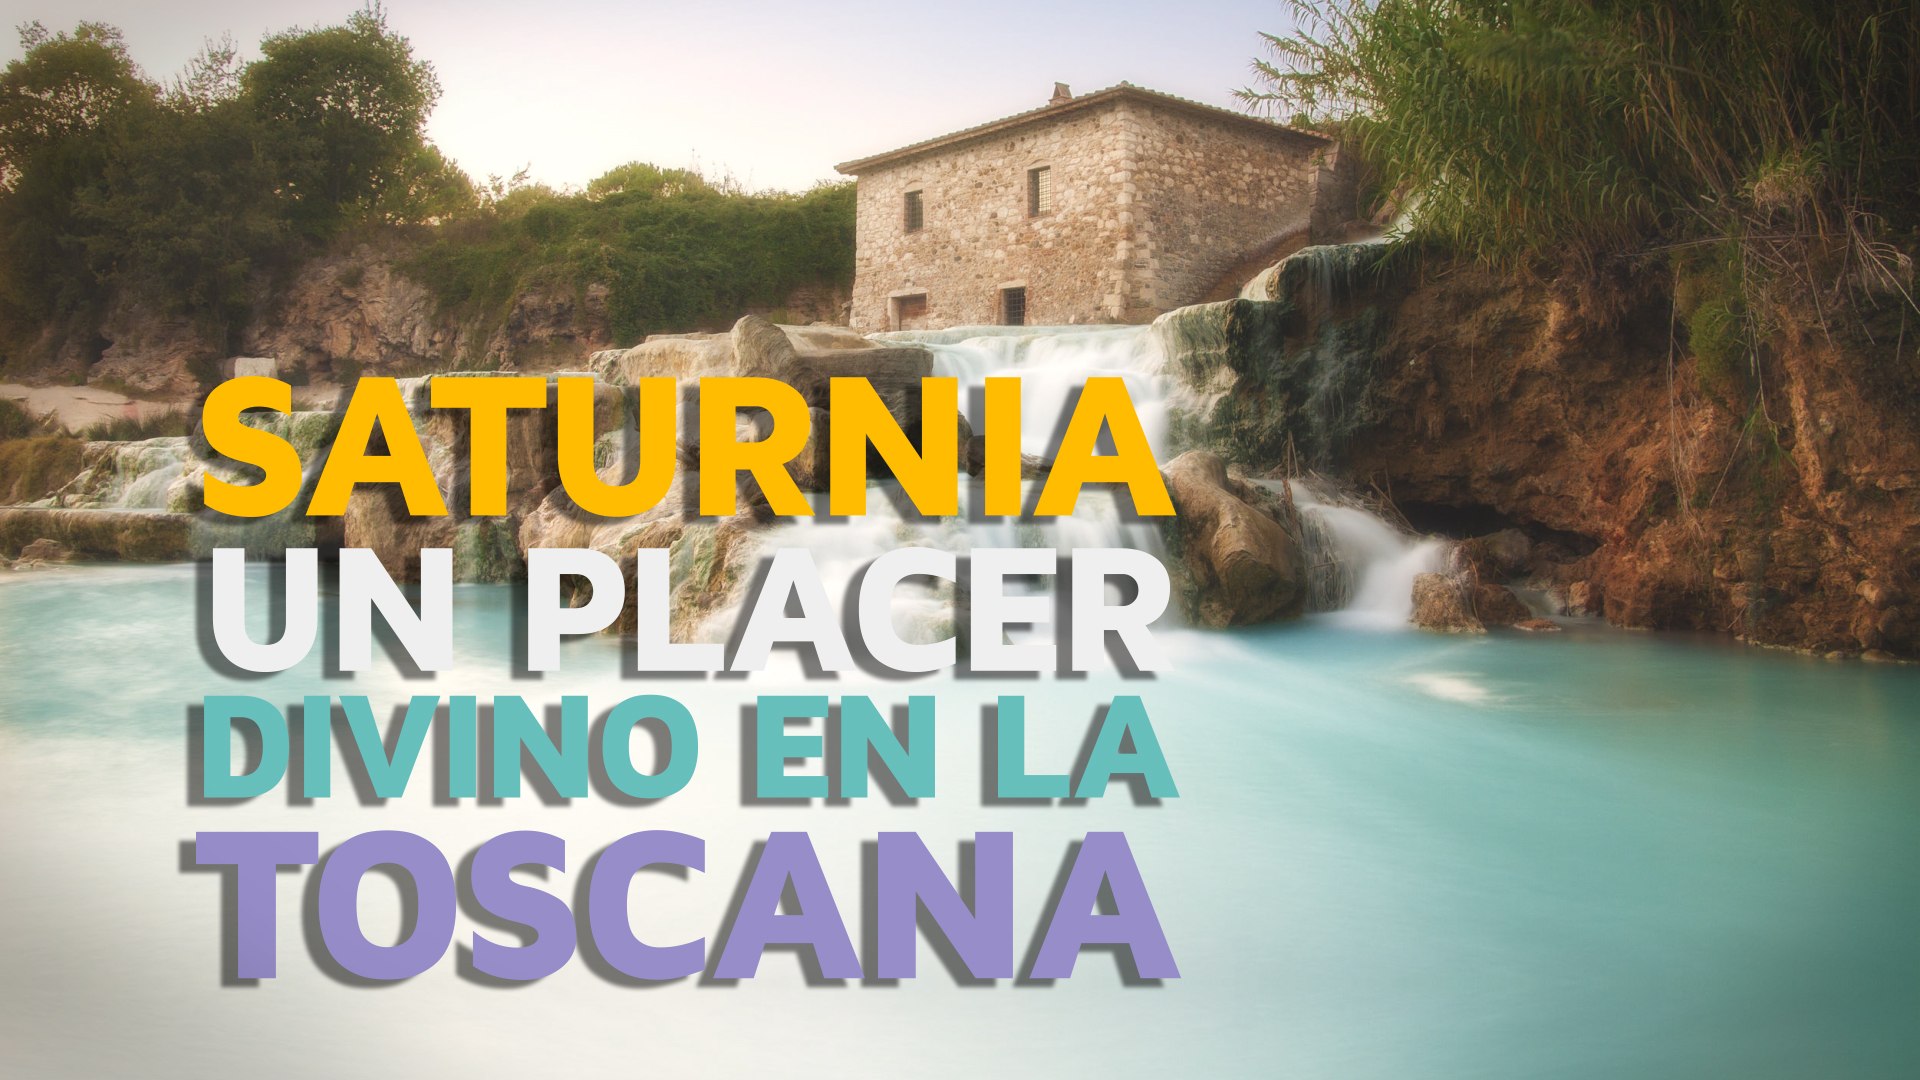 Saturnia, un placer divino en la Toscana - Vídeo Dailymotion